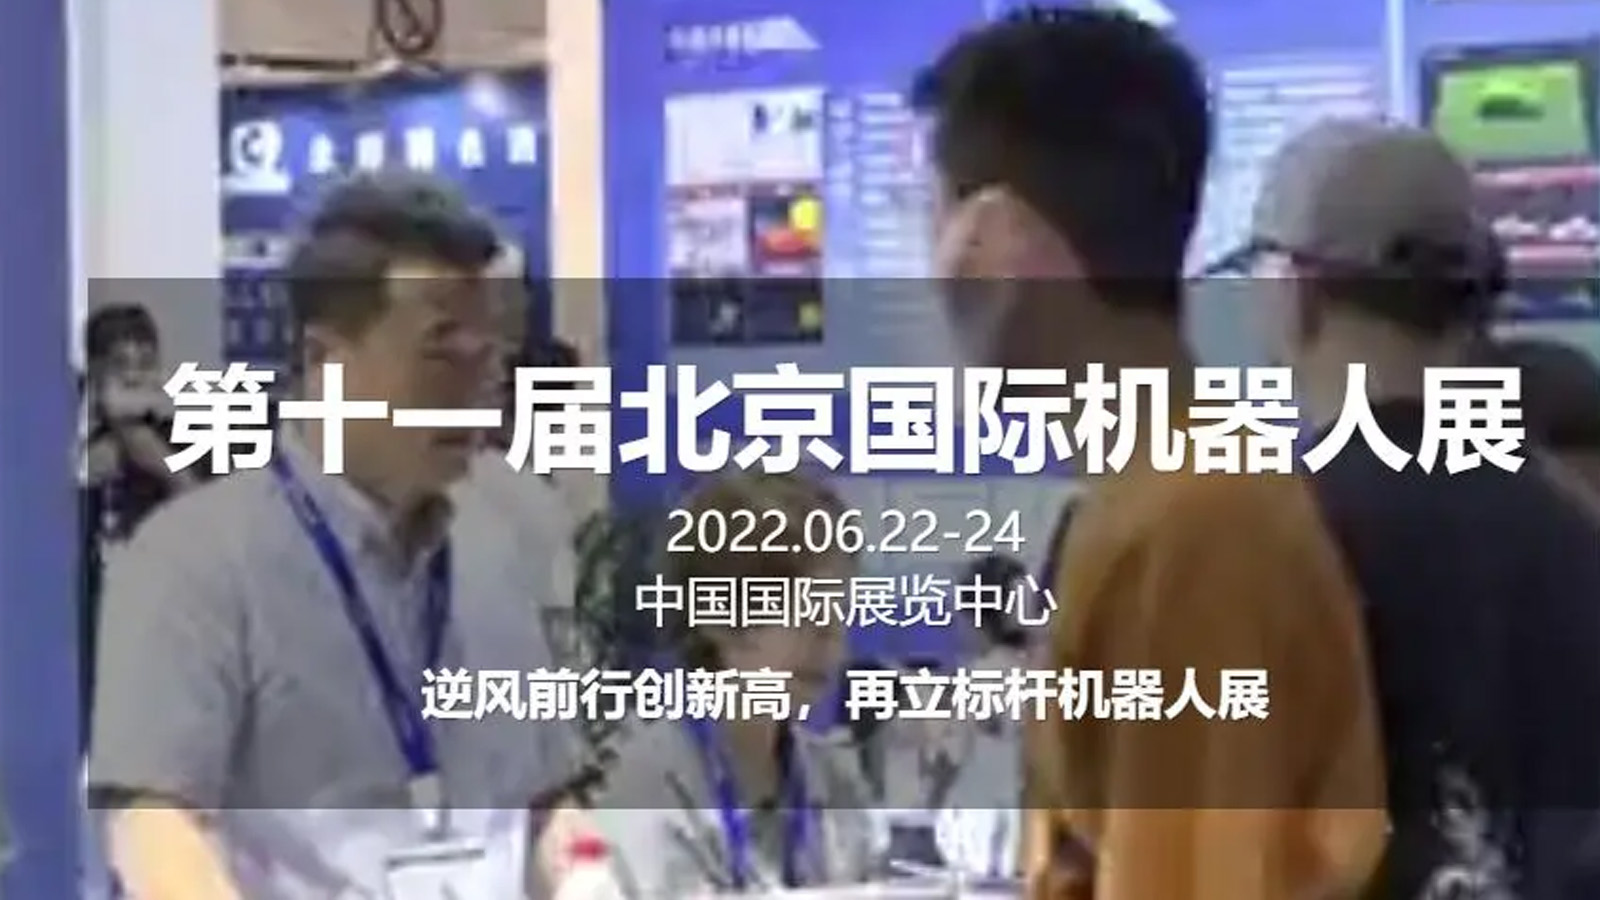 全国机器人展-2022北京国际机器人展览会